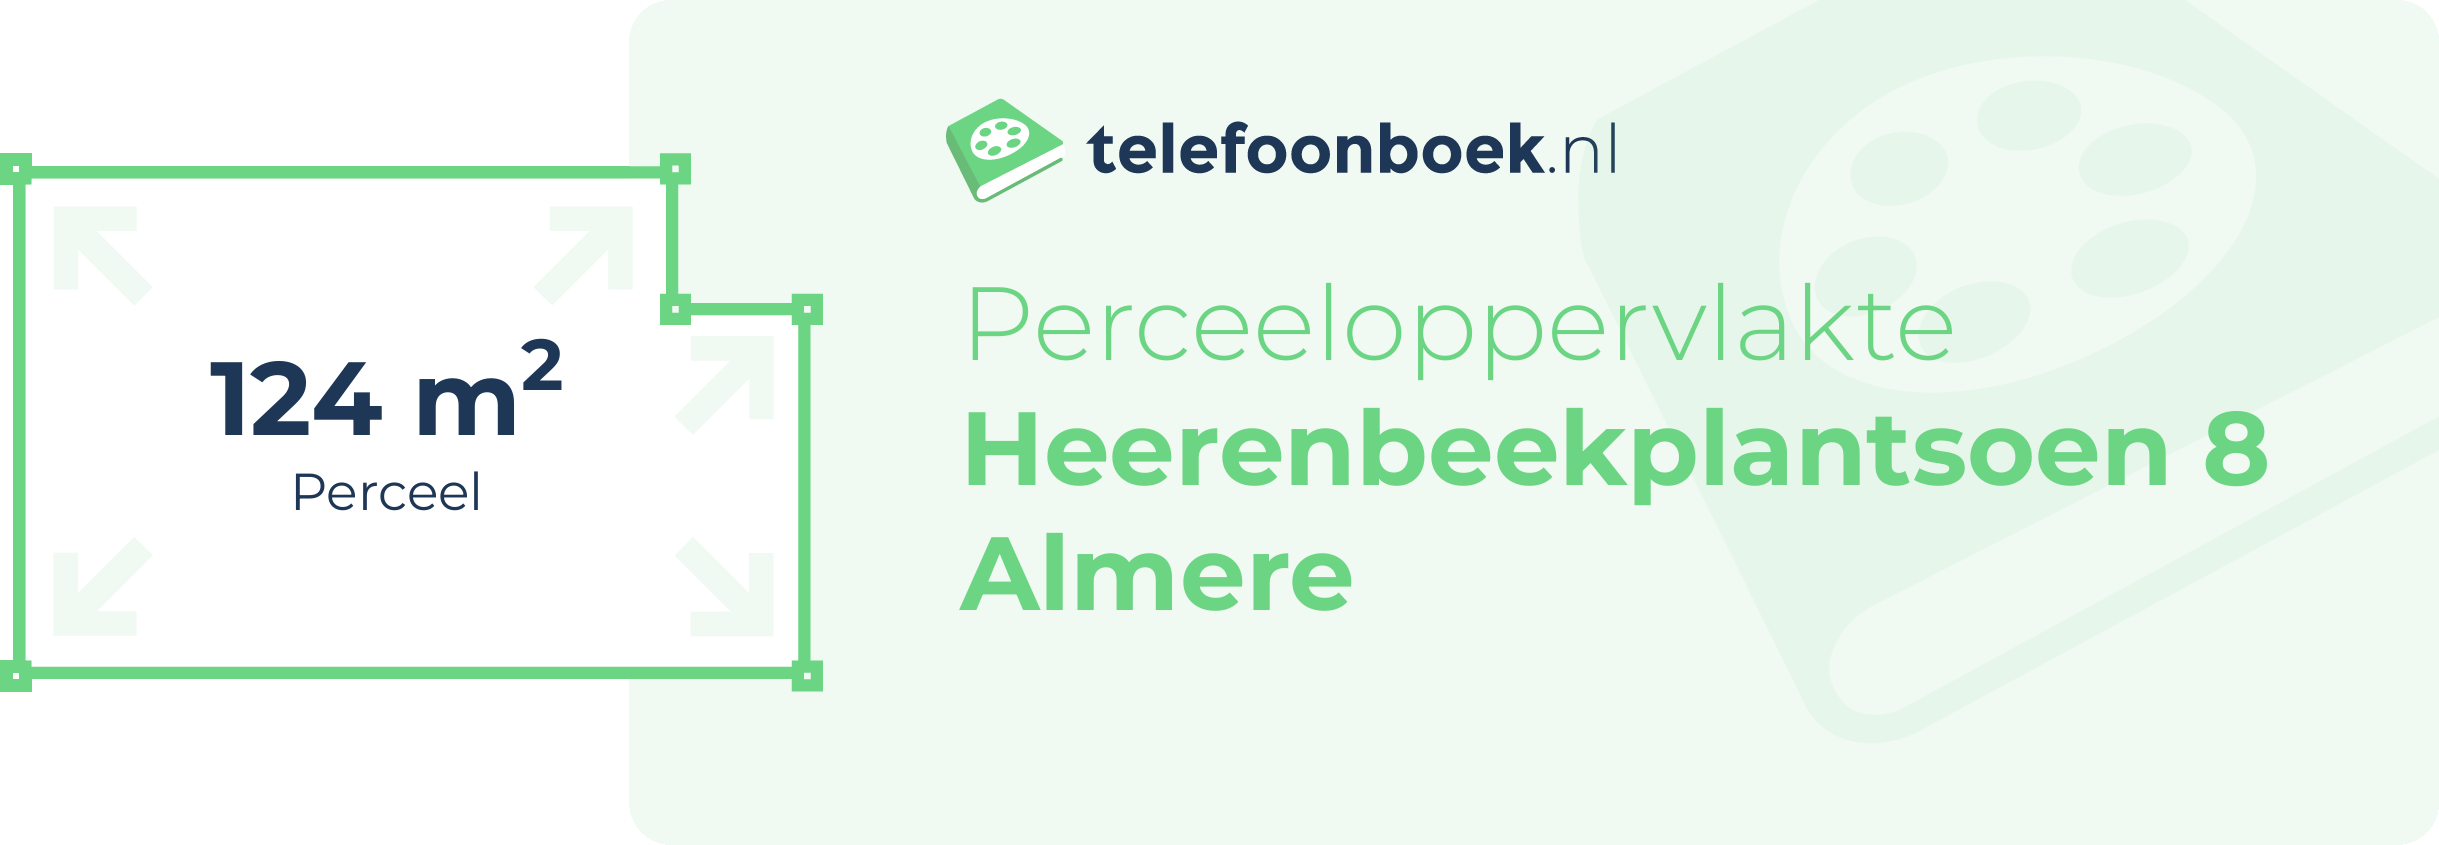 Perceeloppervlakte Heerenbeekplantsoen 8 Almere